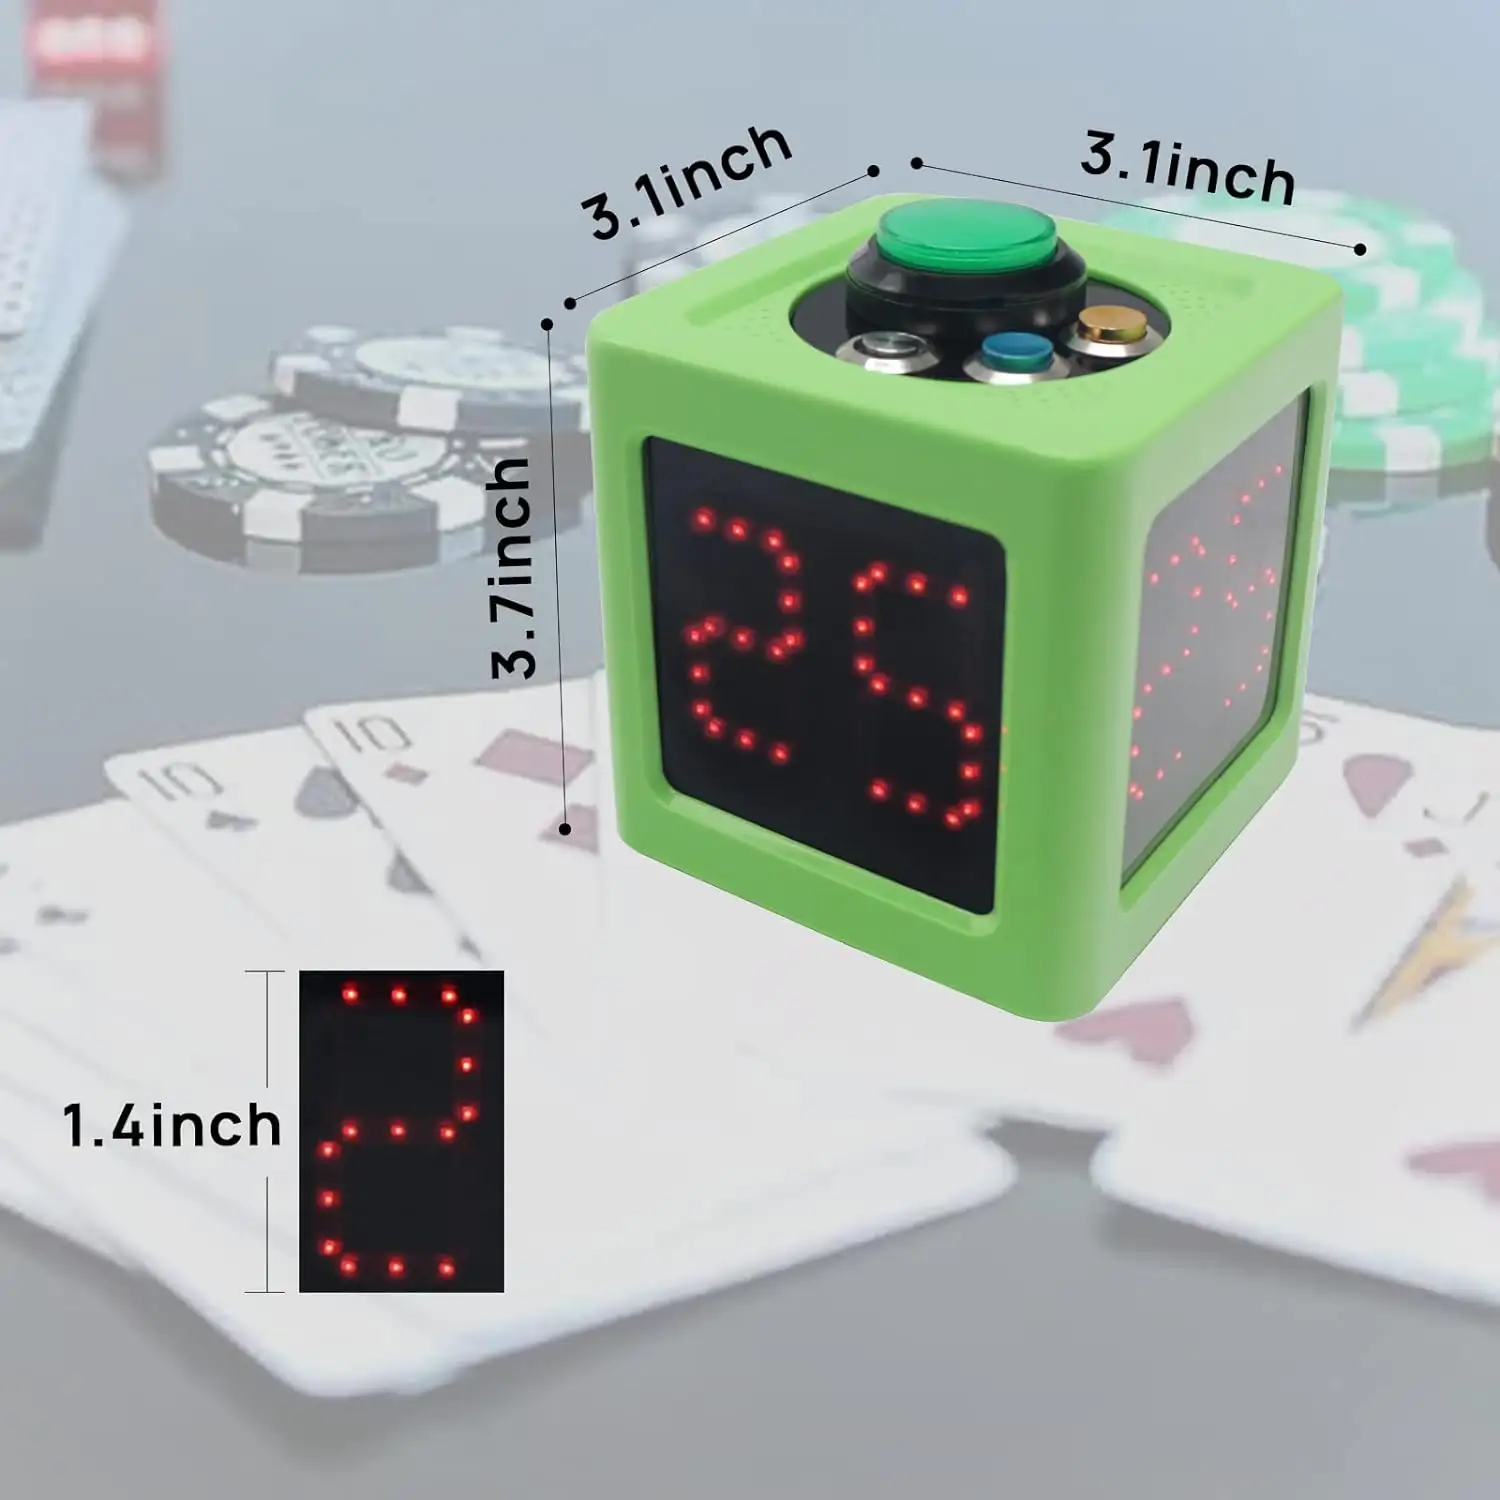 Yizhi - Novo temporizador de pôquer com 2 conjuntos de temporizador personalizado para jogos de pôquer/ xadrez/Mahjong/festa, relógio de contagem regressiva